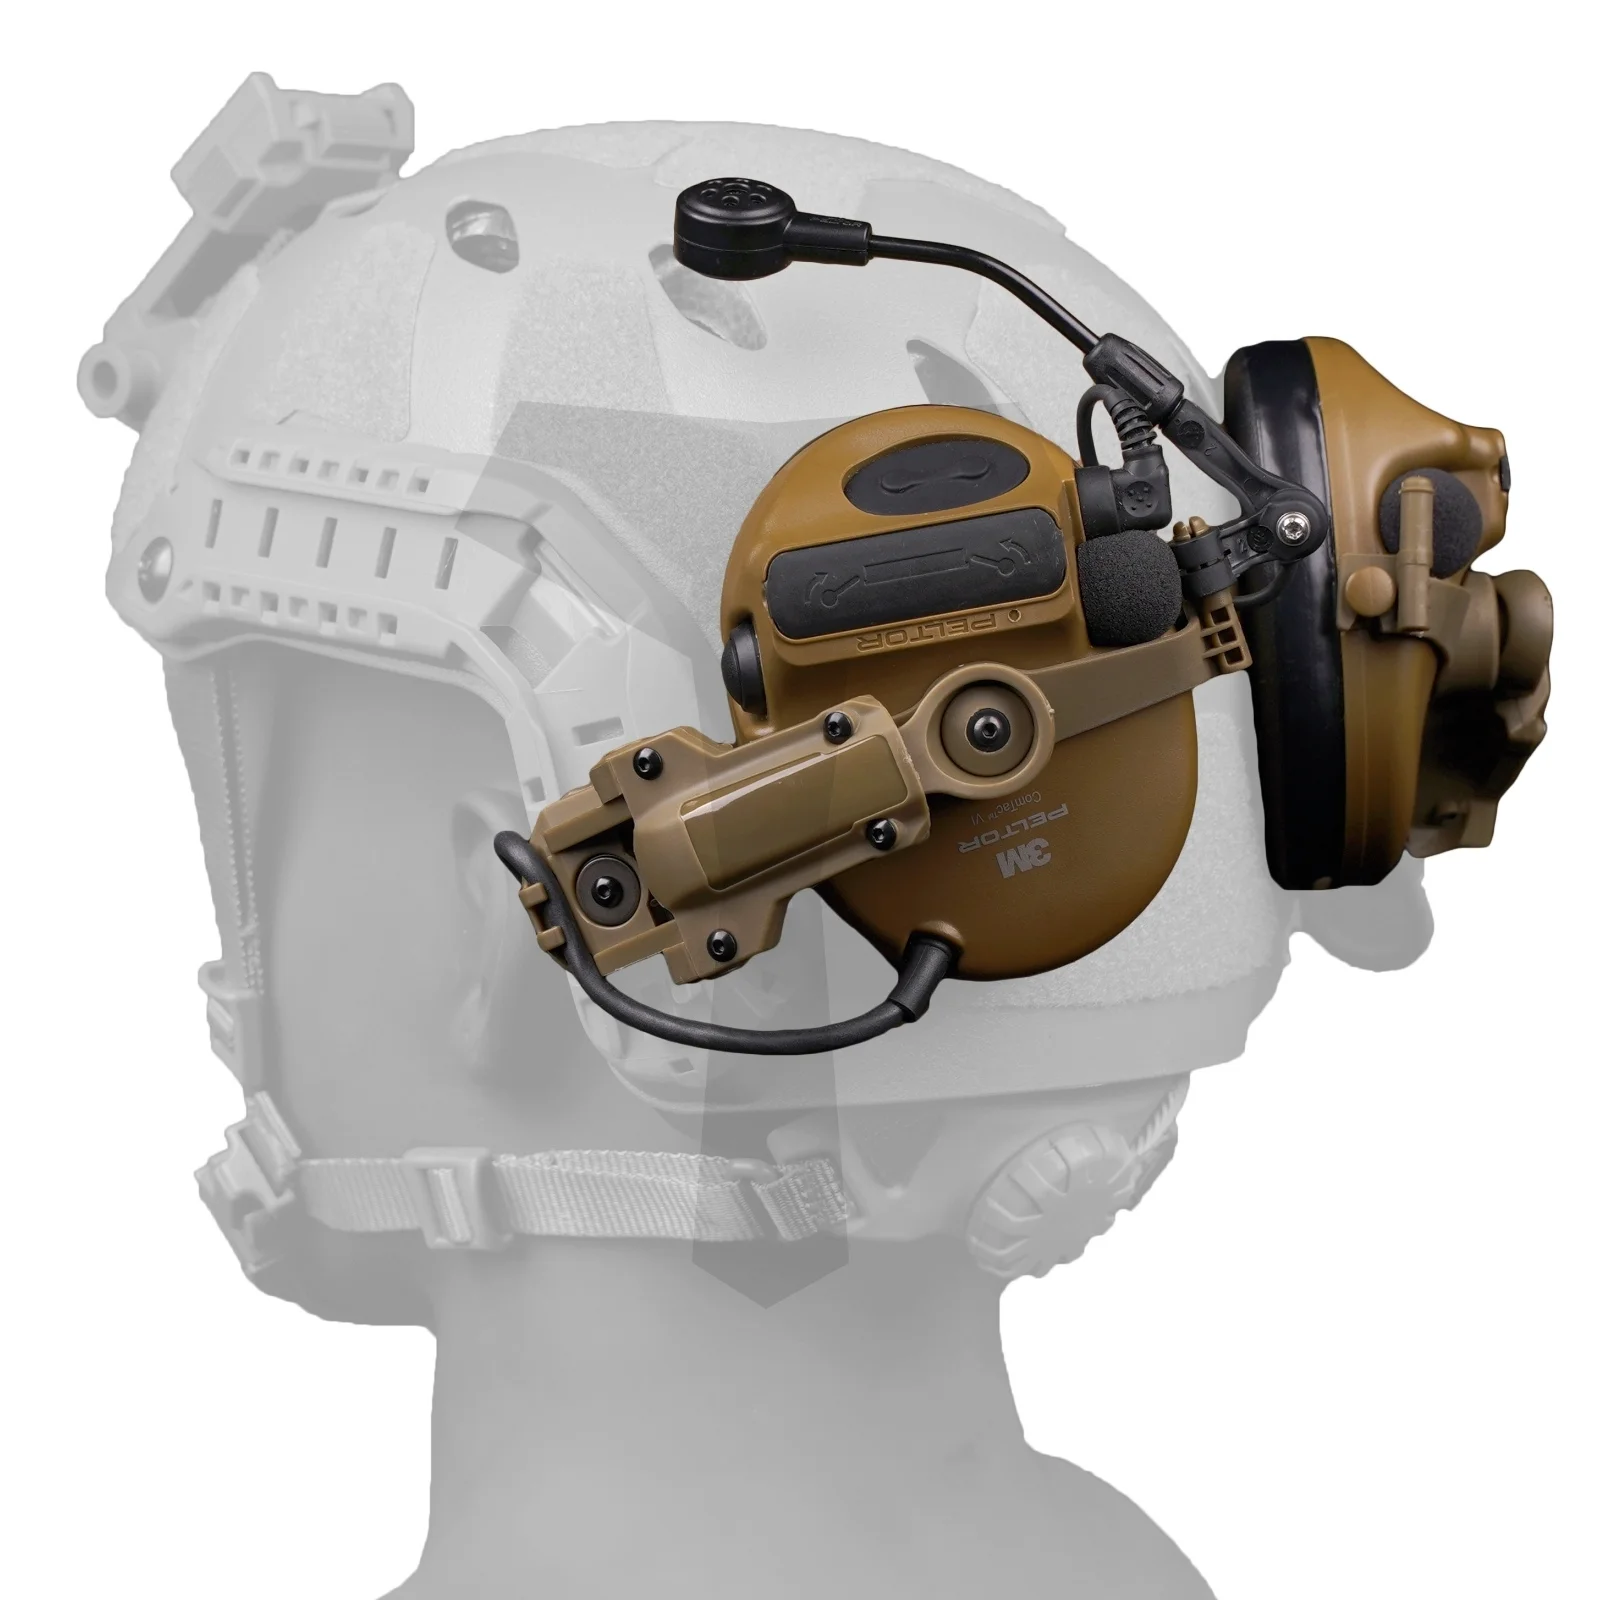 Adaptor Rel Helm Taktis untuk Aksesori Menembak Airsoft PELTOR ComTac Dudukan Headset Cocok untuk Tim ARC Inti Ops Rel Wendy MLOK - 3